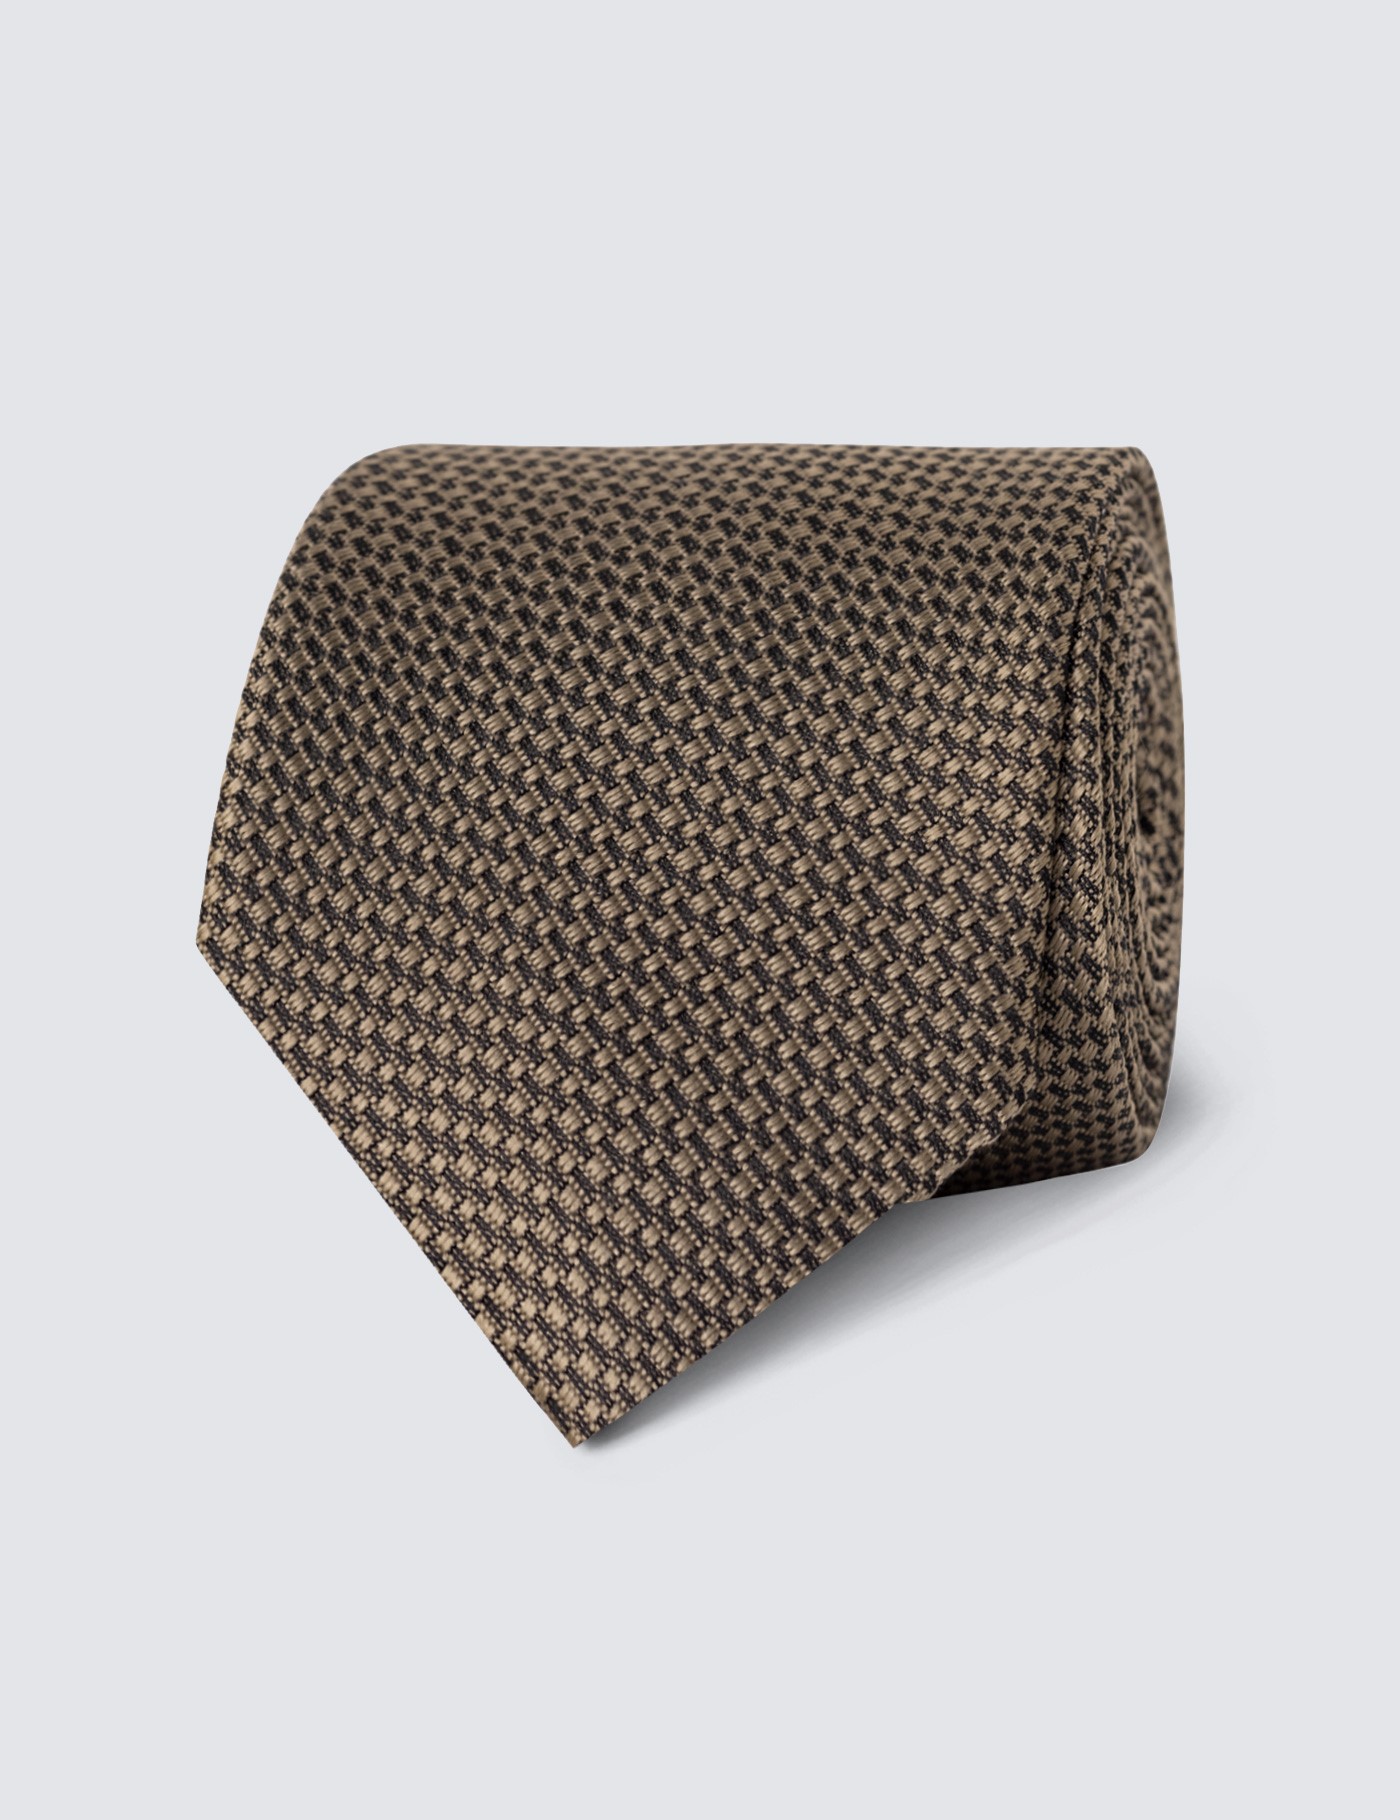 Hawes & Curtis Camel Textured Plain Tie - 100% Silk